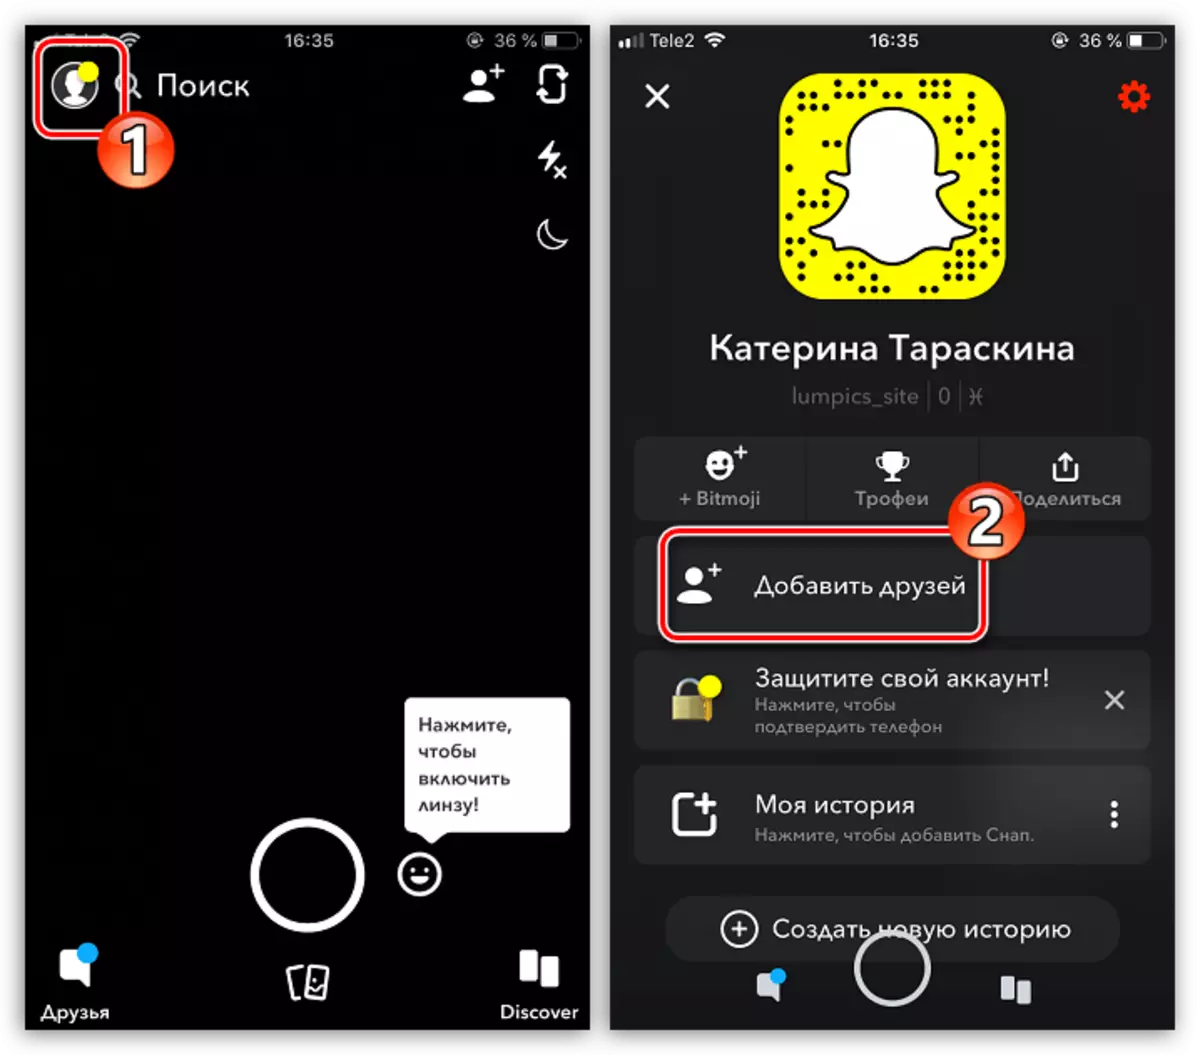 Tsvaga shamwari mune snapchat application pane iyo iPhone